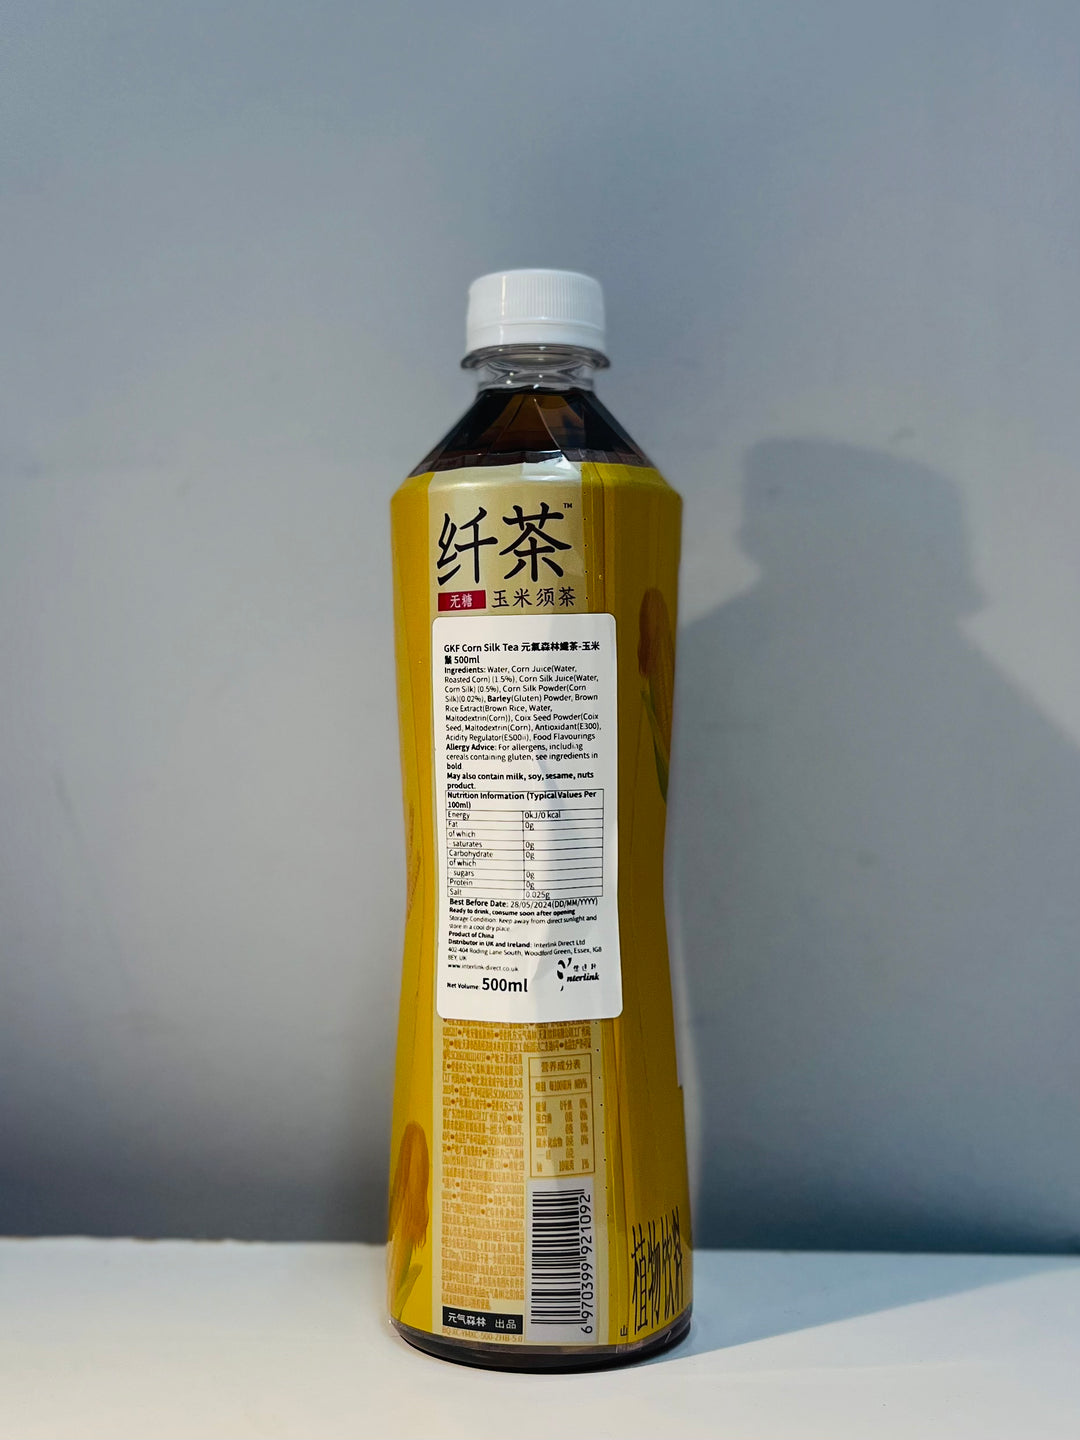 元气森林纤茶玉米须味500ml GKF Corn Silk Tea